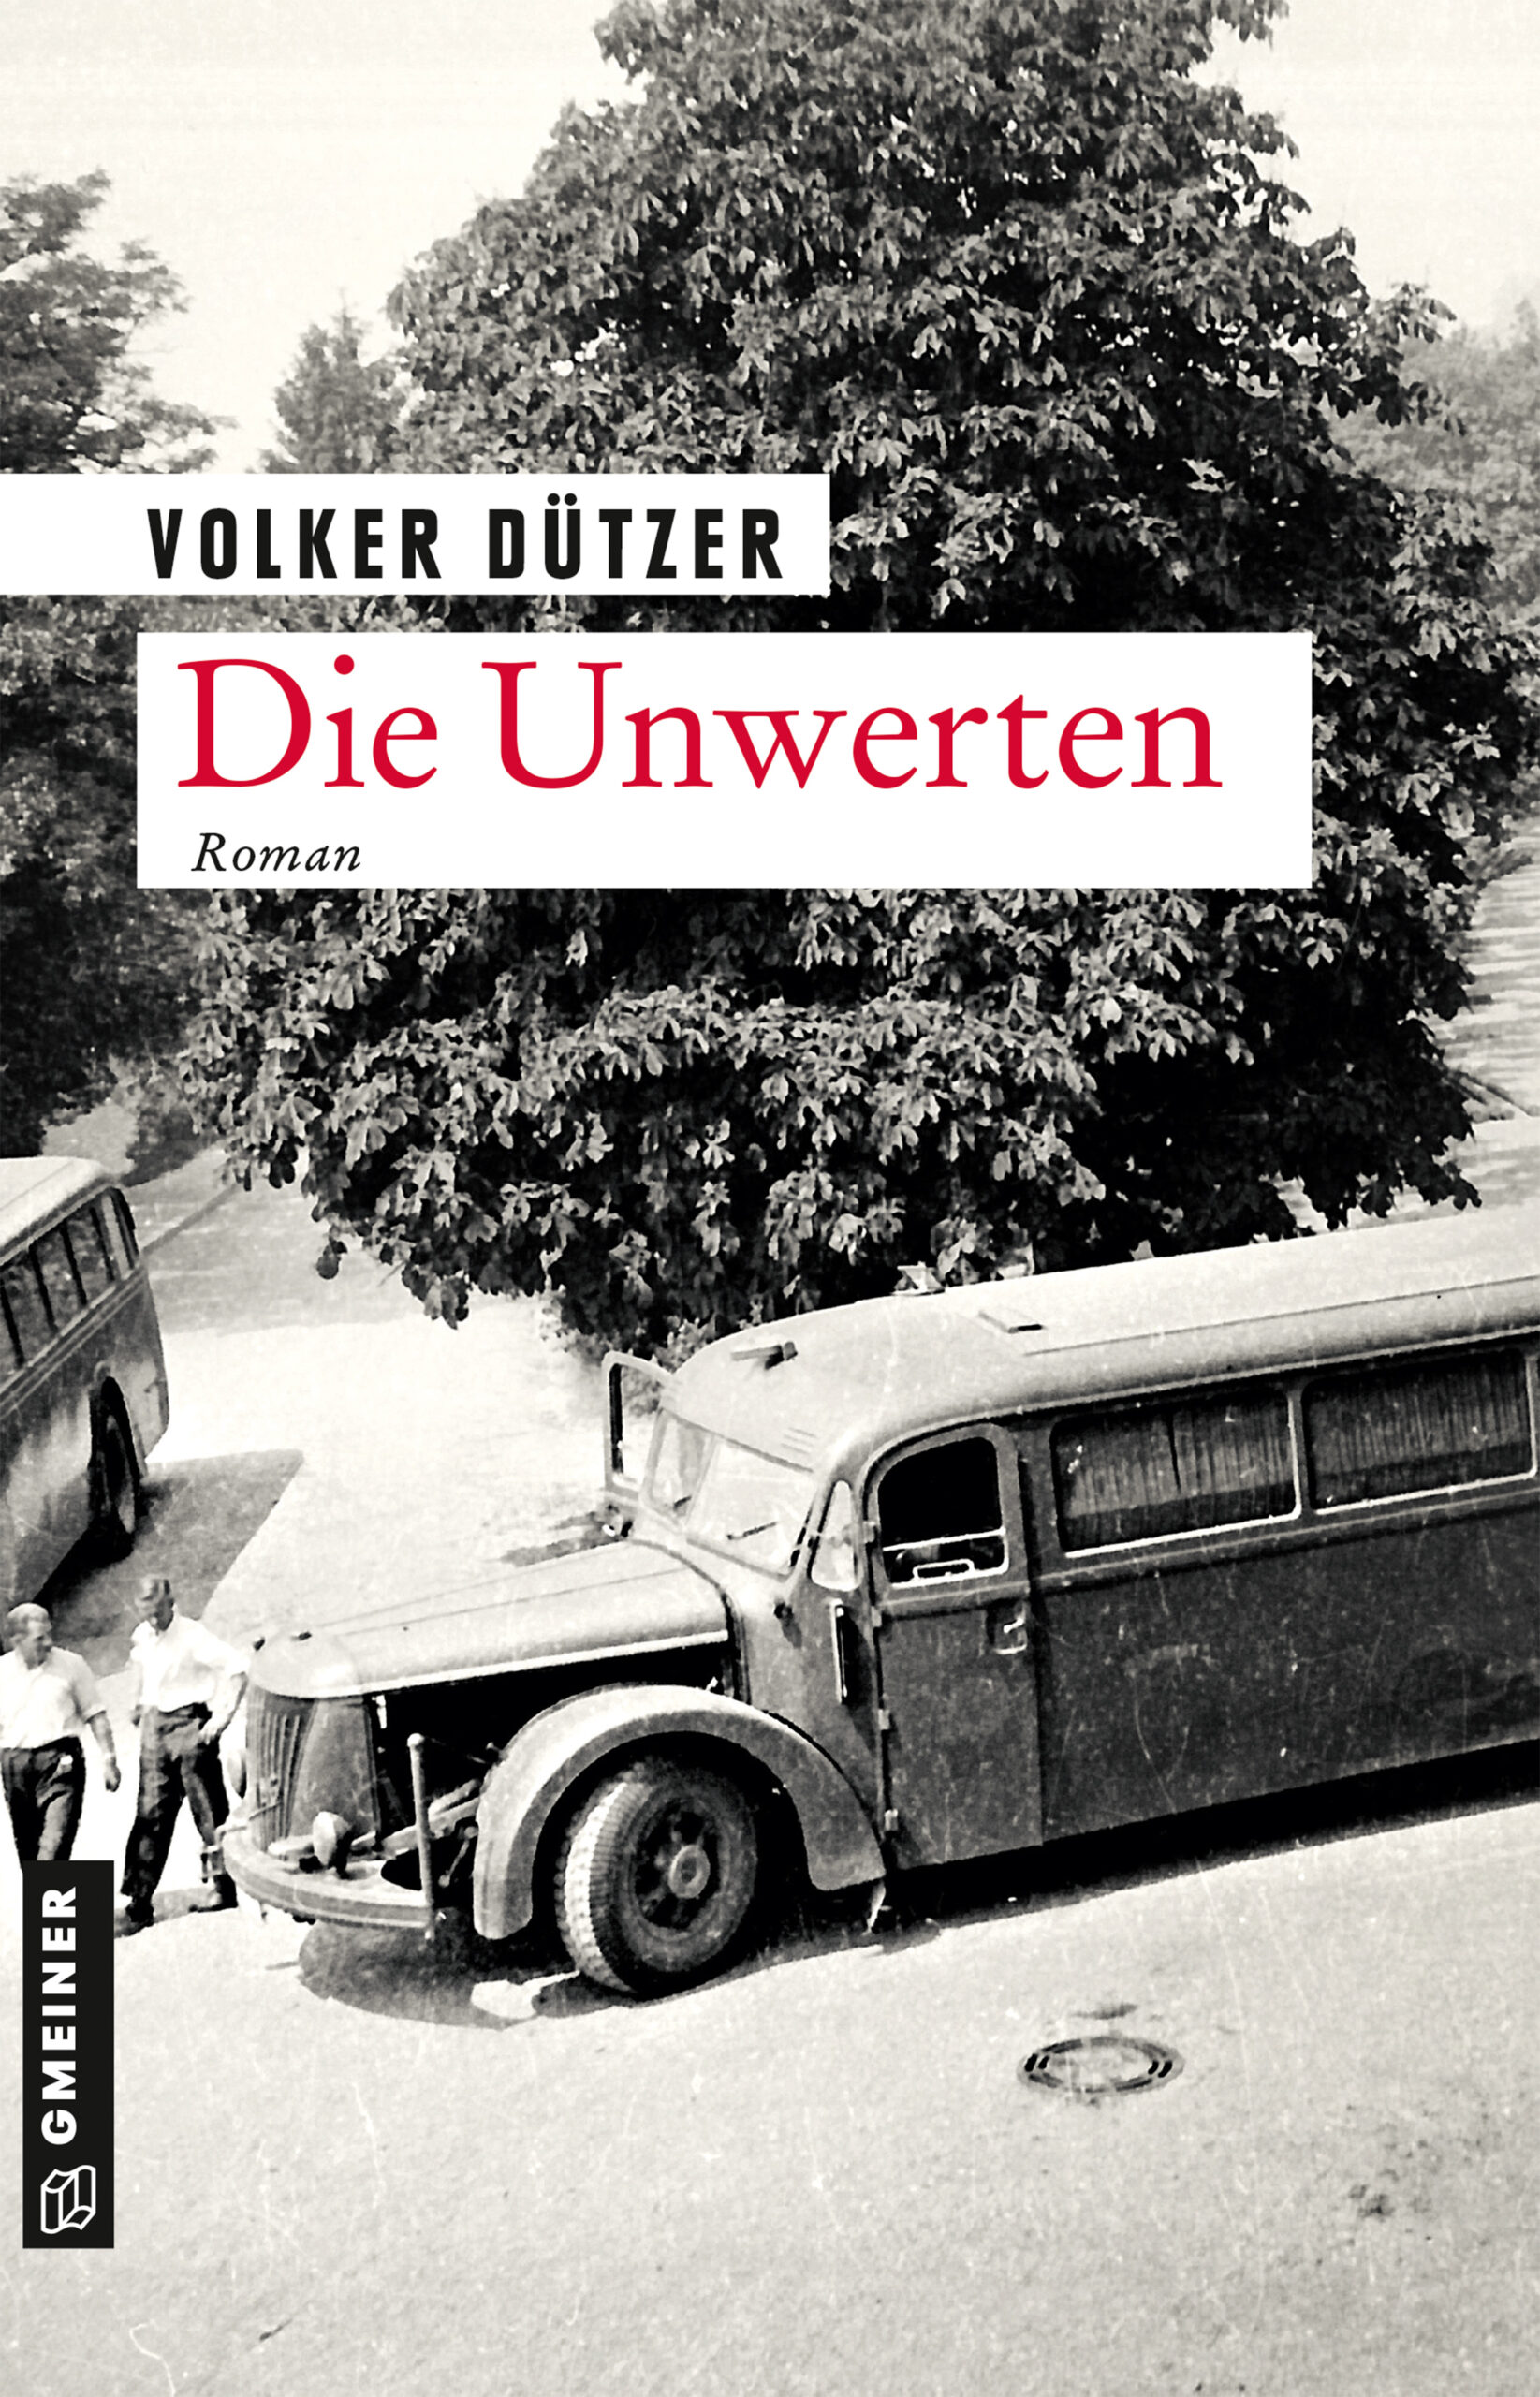 Die Unwerten, Volker Dützer, 2020